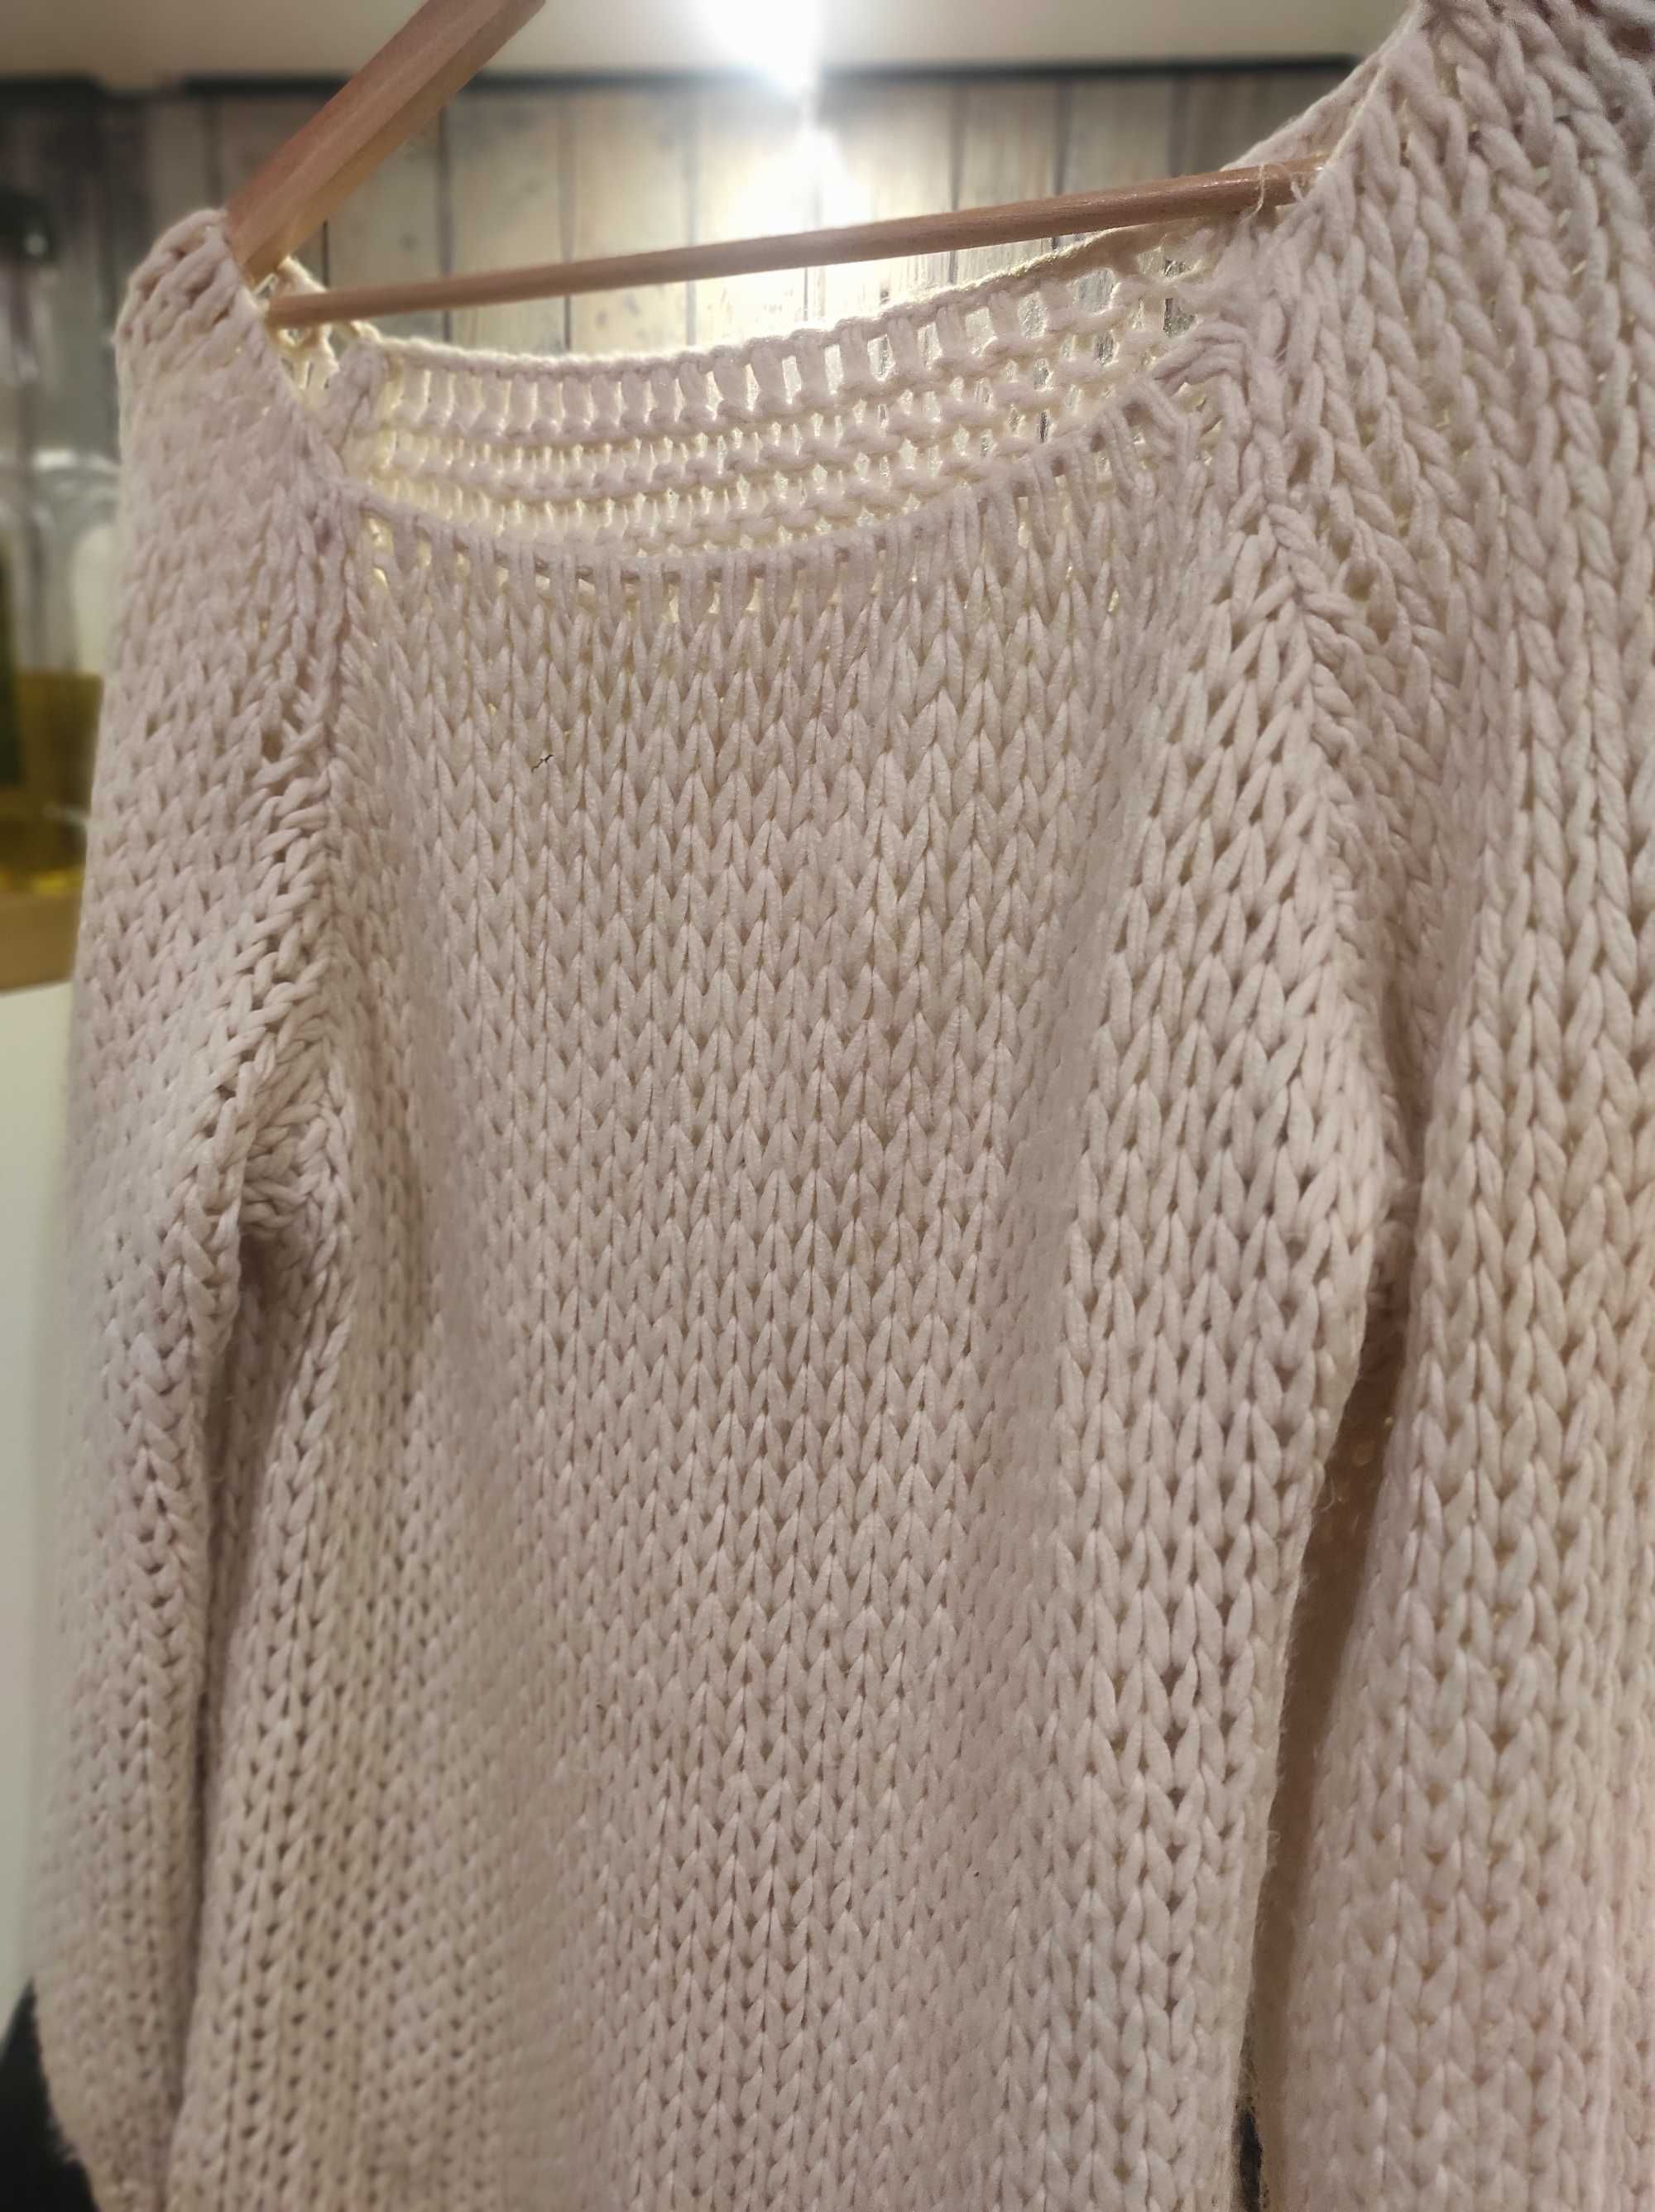 Włoski kremowy sweter damski gruby splot rozmiar uniwersalny S/M/L